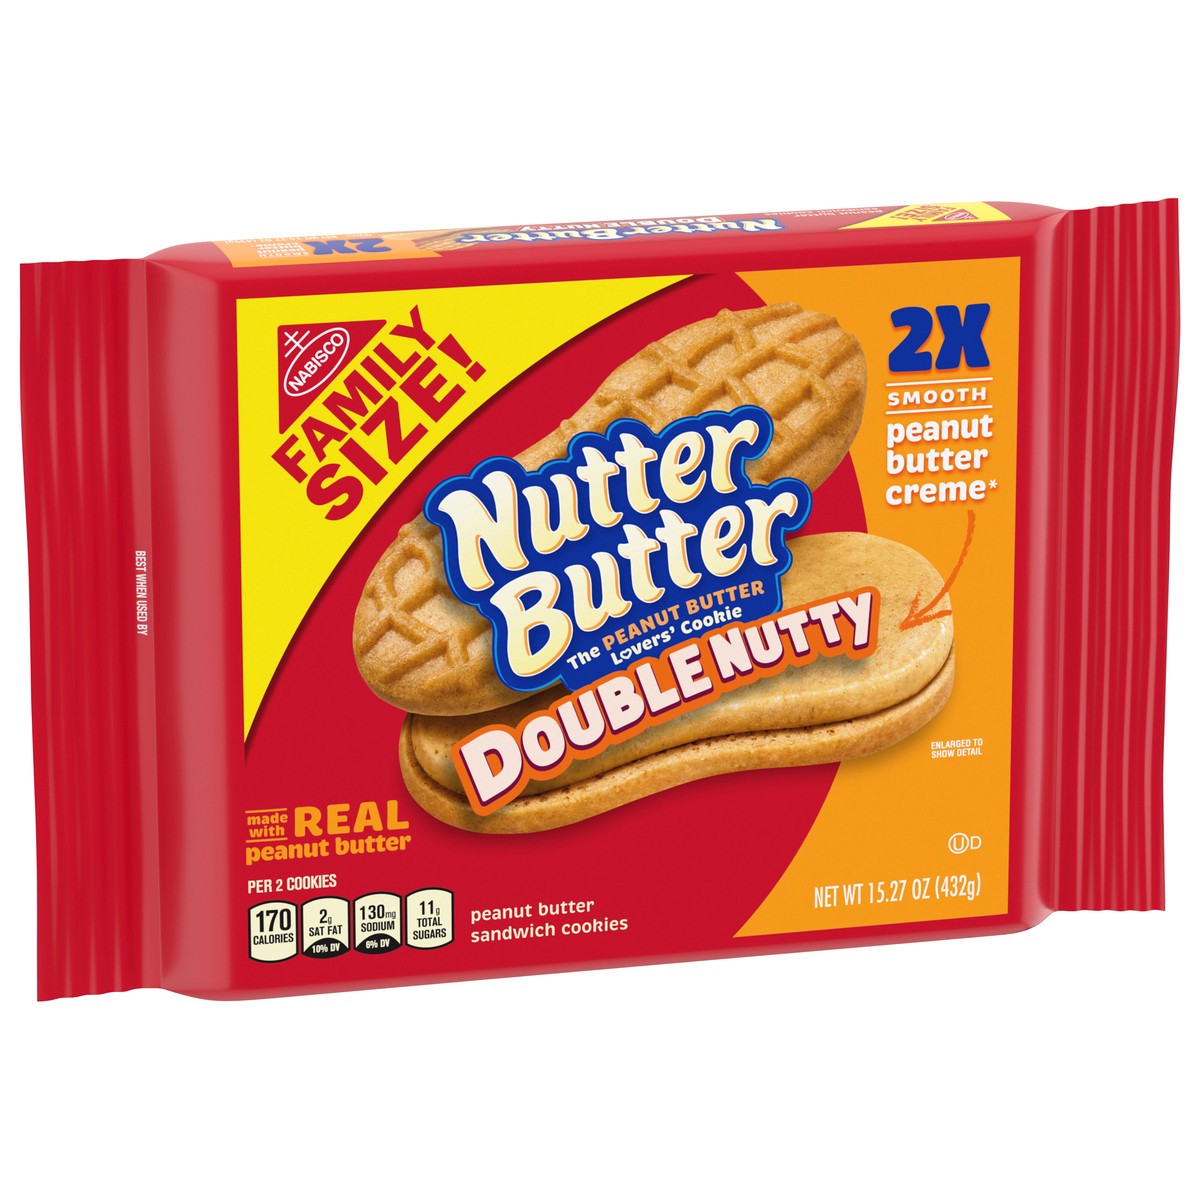 slide 2 of 9, Nutter Butter Double Nutty Sandwich Cookies, 15.27 oz